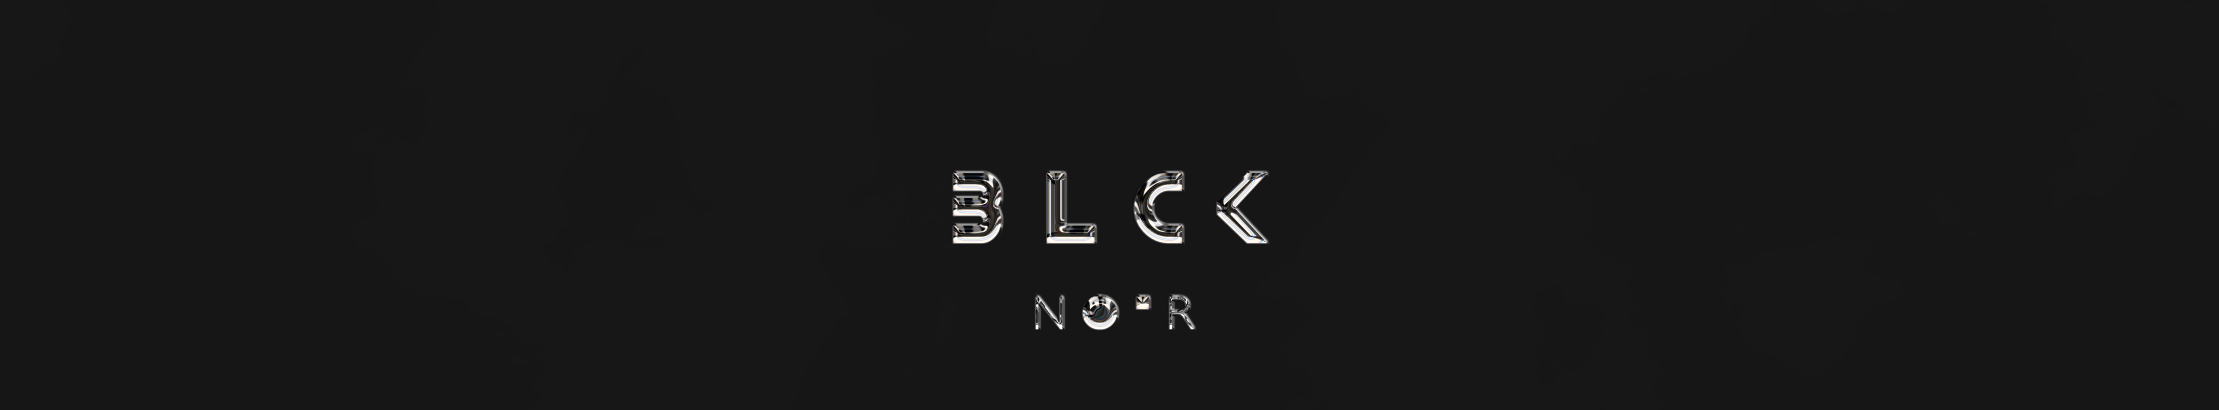 Alex NOIR's profile banner